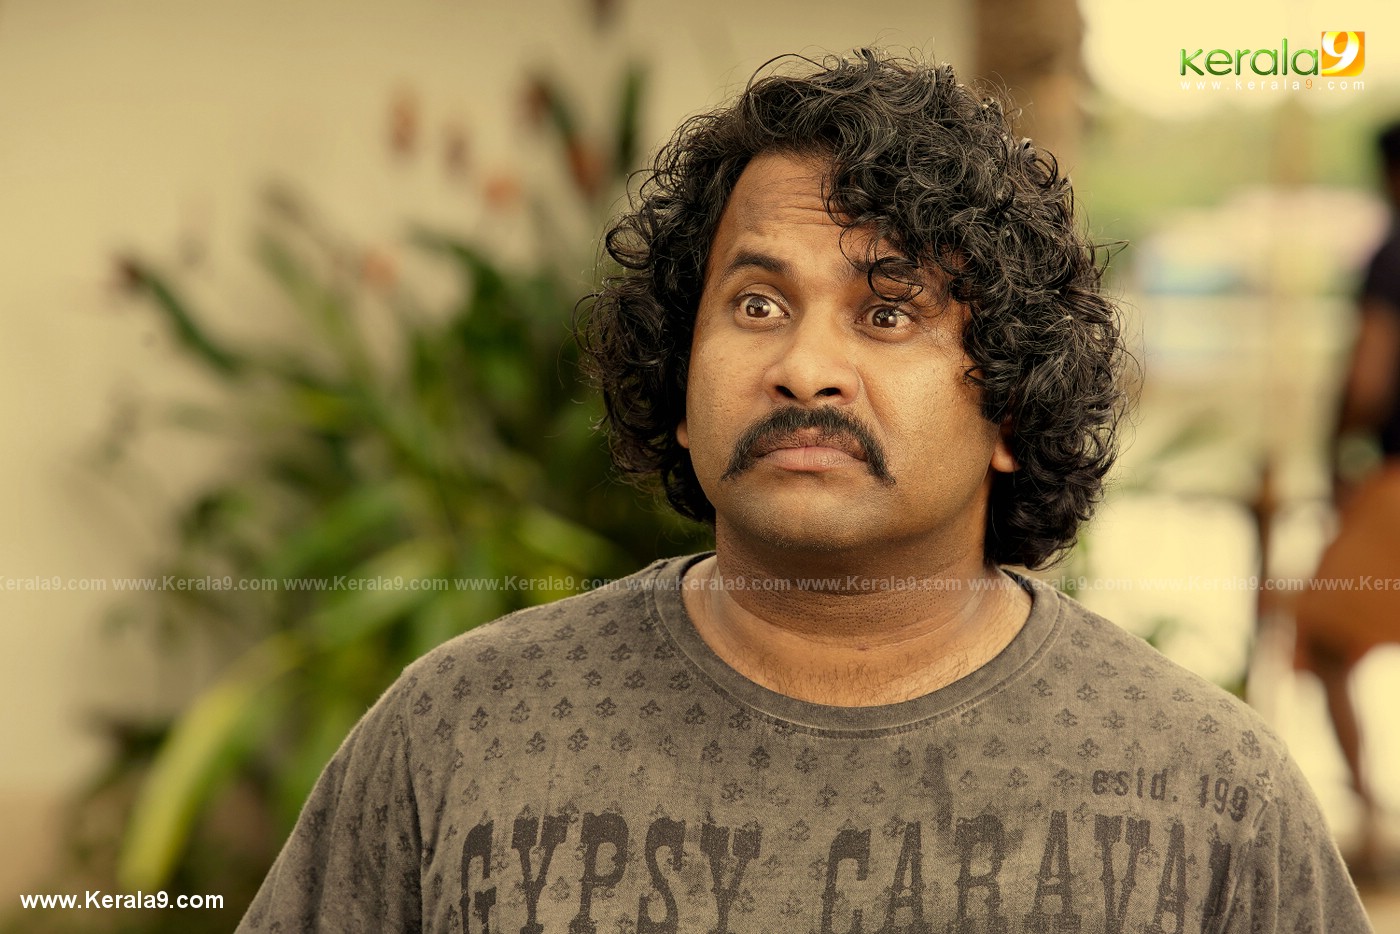 madura raja movie stills 2 - Kerala9.com